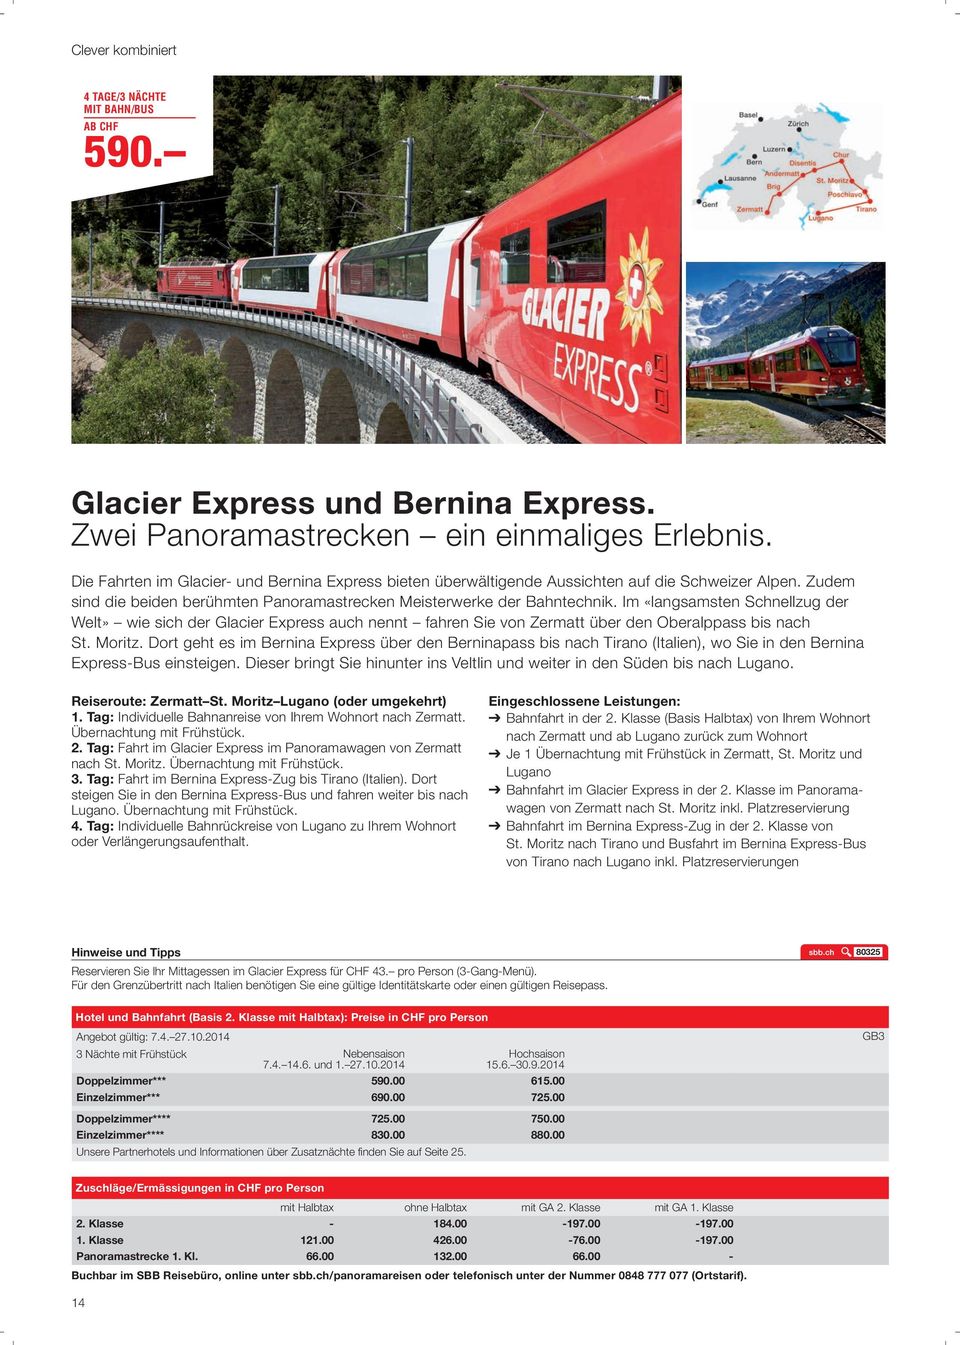 Im «langsamsten Schnellzug der Welt» wie sich der Glacier Express auch nennt fahren Sie von Zermatt über den Oberalppass bis nach St. Moritz.